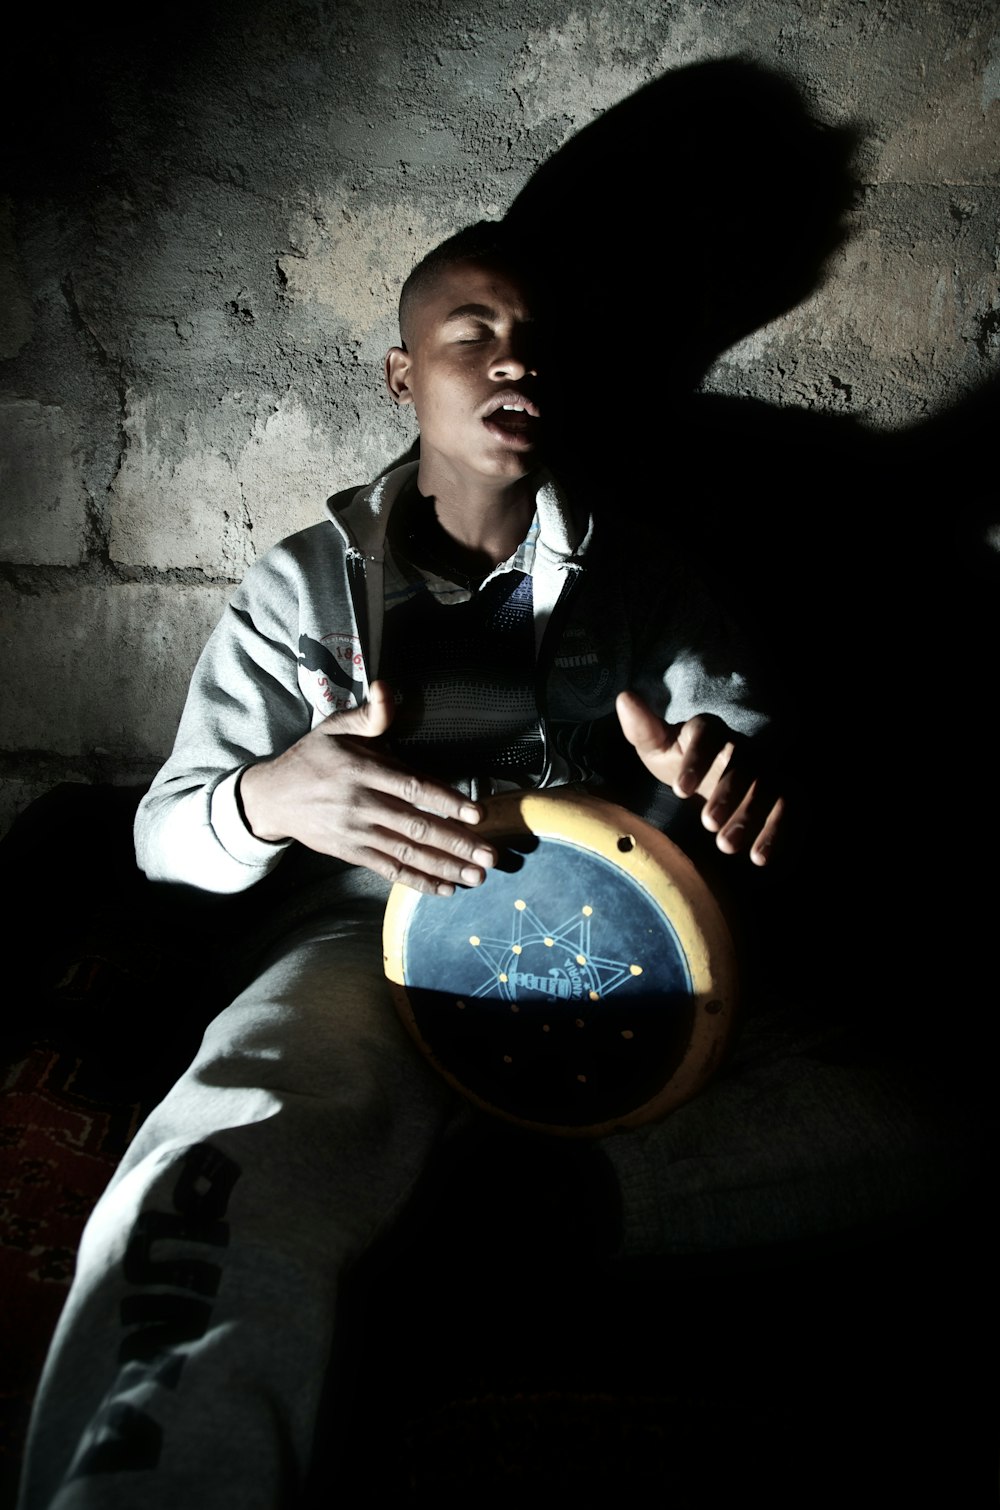 homme jouant d’un instrument de percussion près du mur